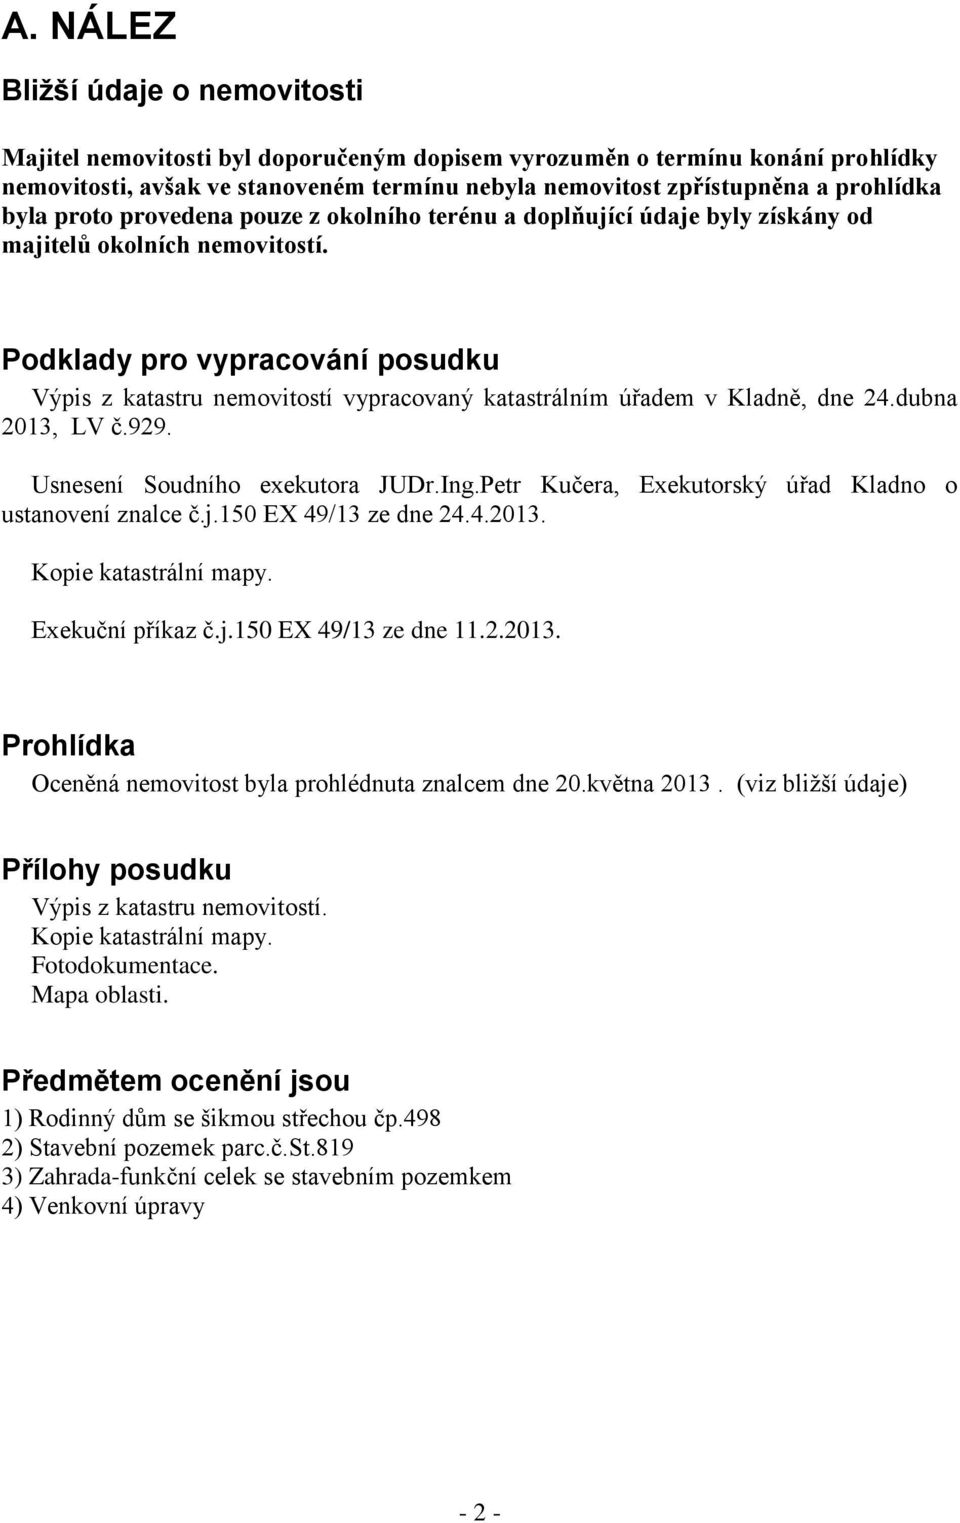 Podklady pro vypracování posudku Výpis z katastru nemovitostí vypracovaný katastrálním úřadem v Kladně, dne 24.dubna 2013, LV č.929. Usnesení Soudního exekutora JUDr.Ing.